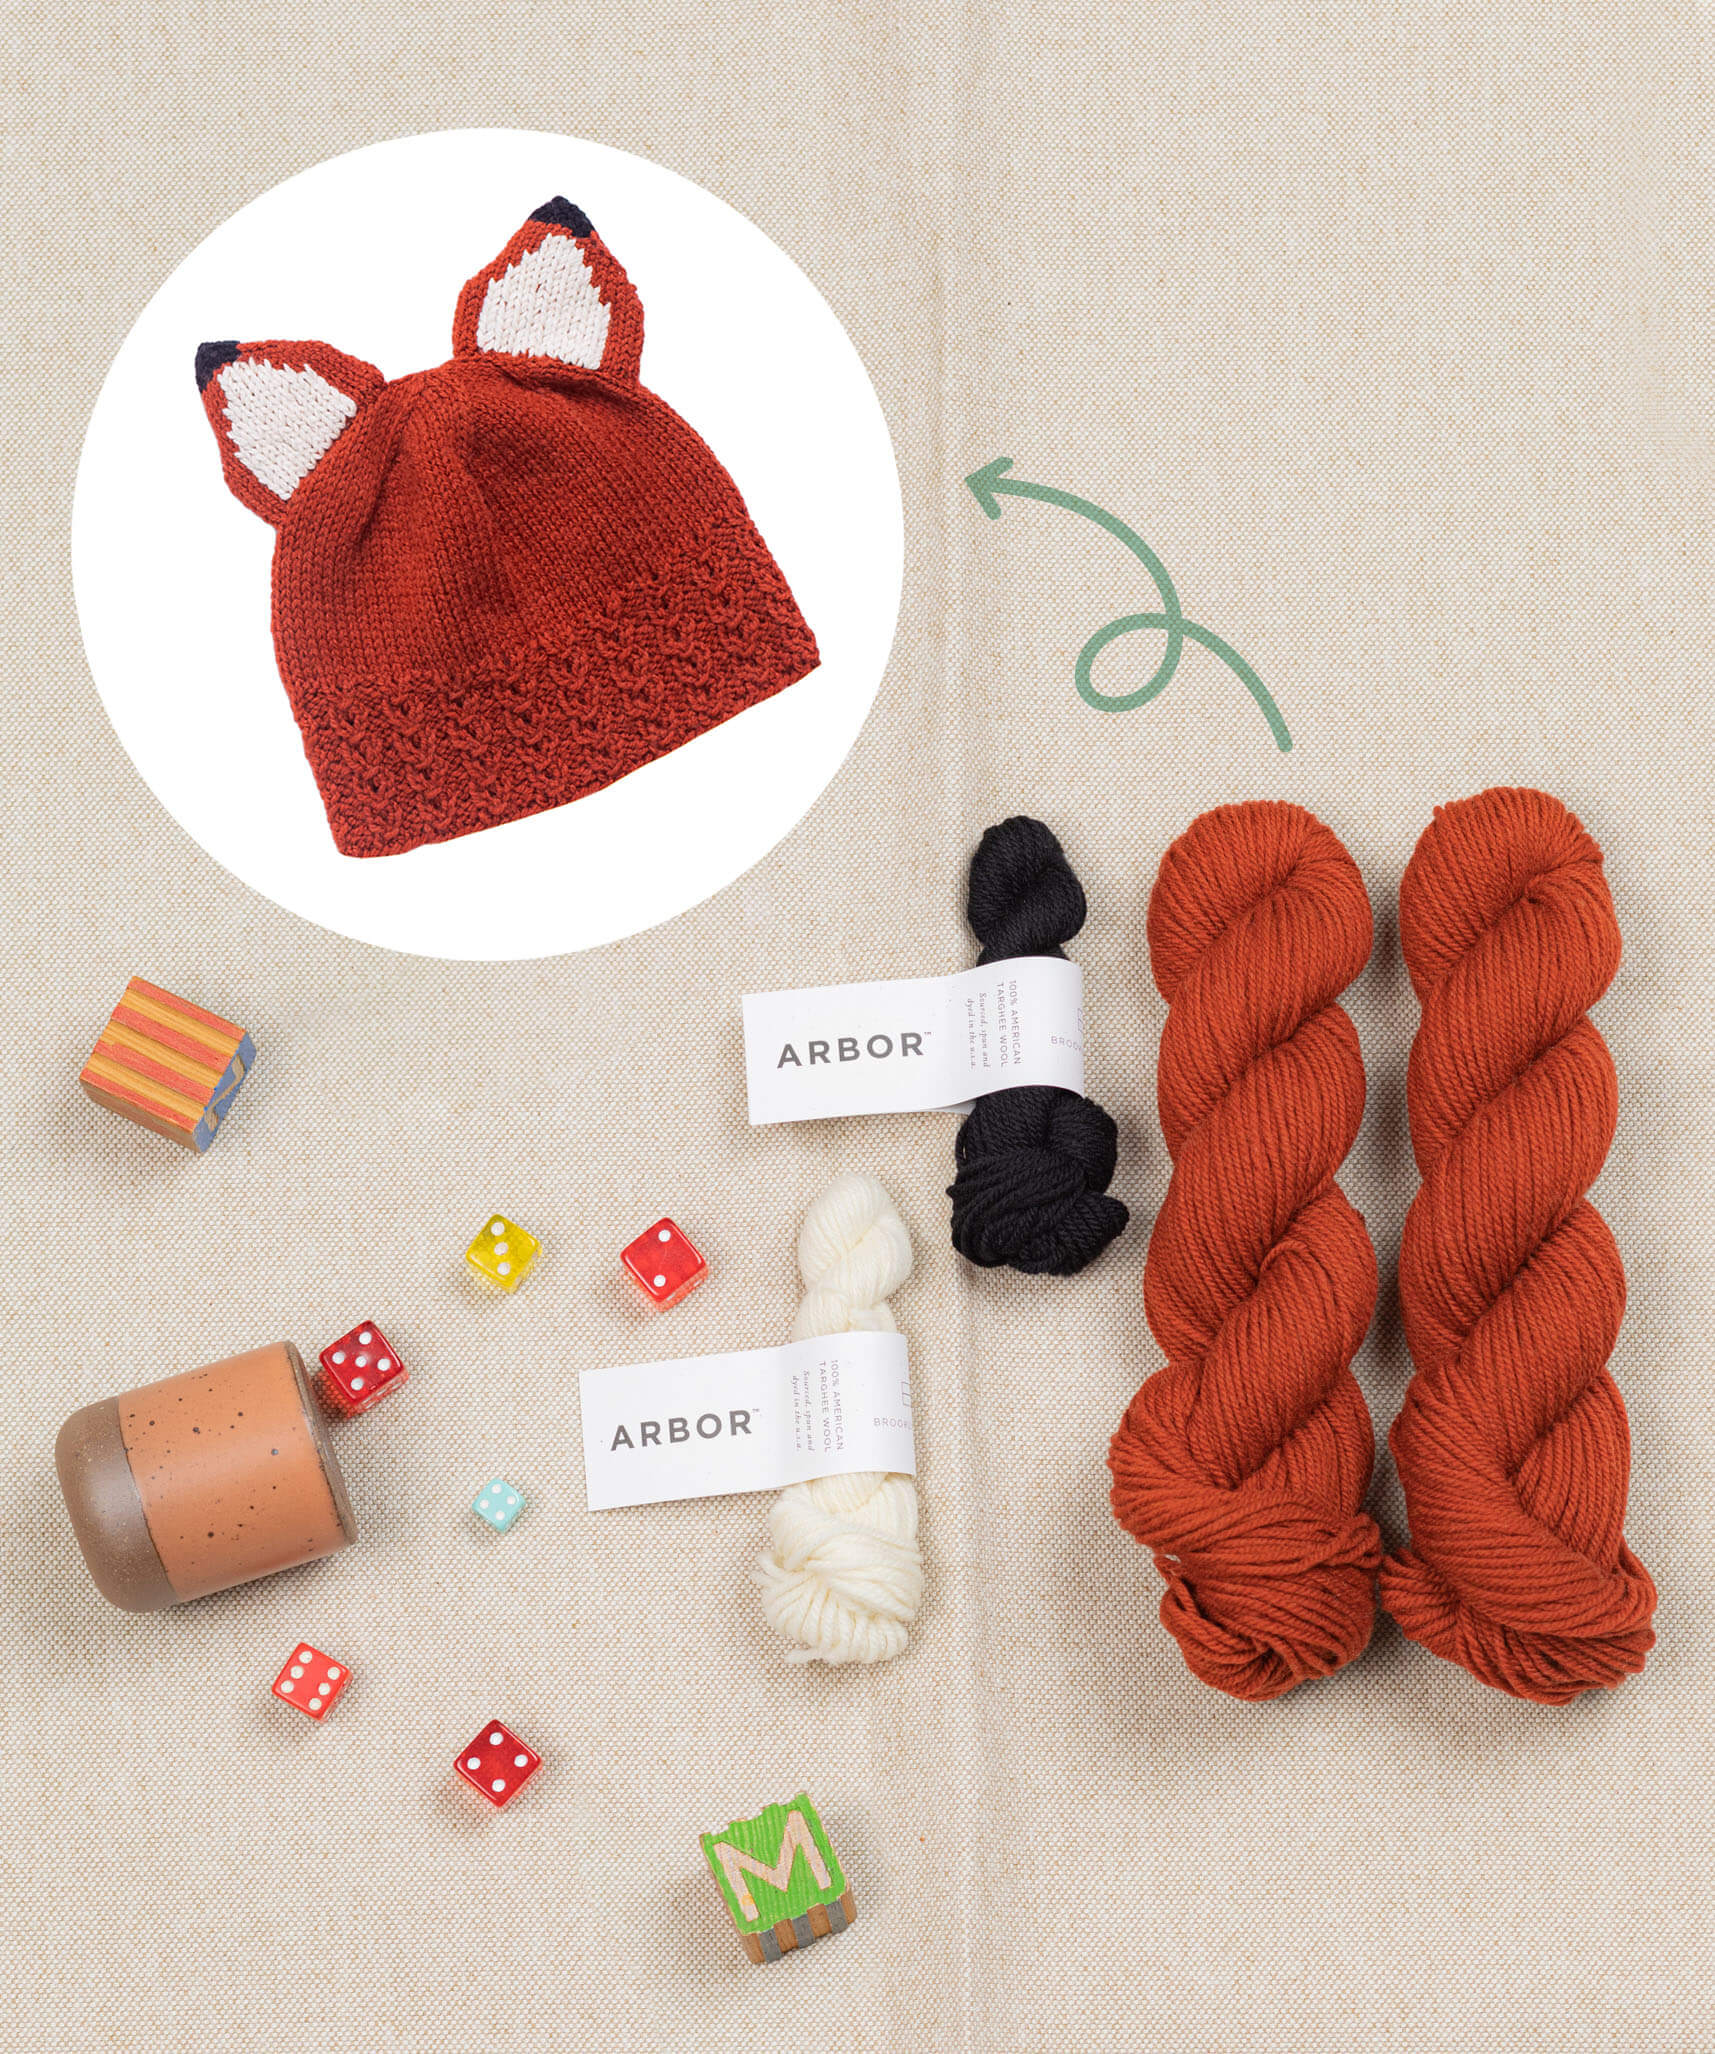  Knitting Kit For Hats